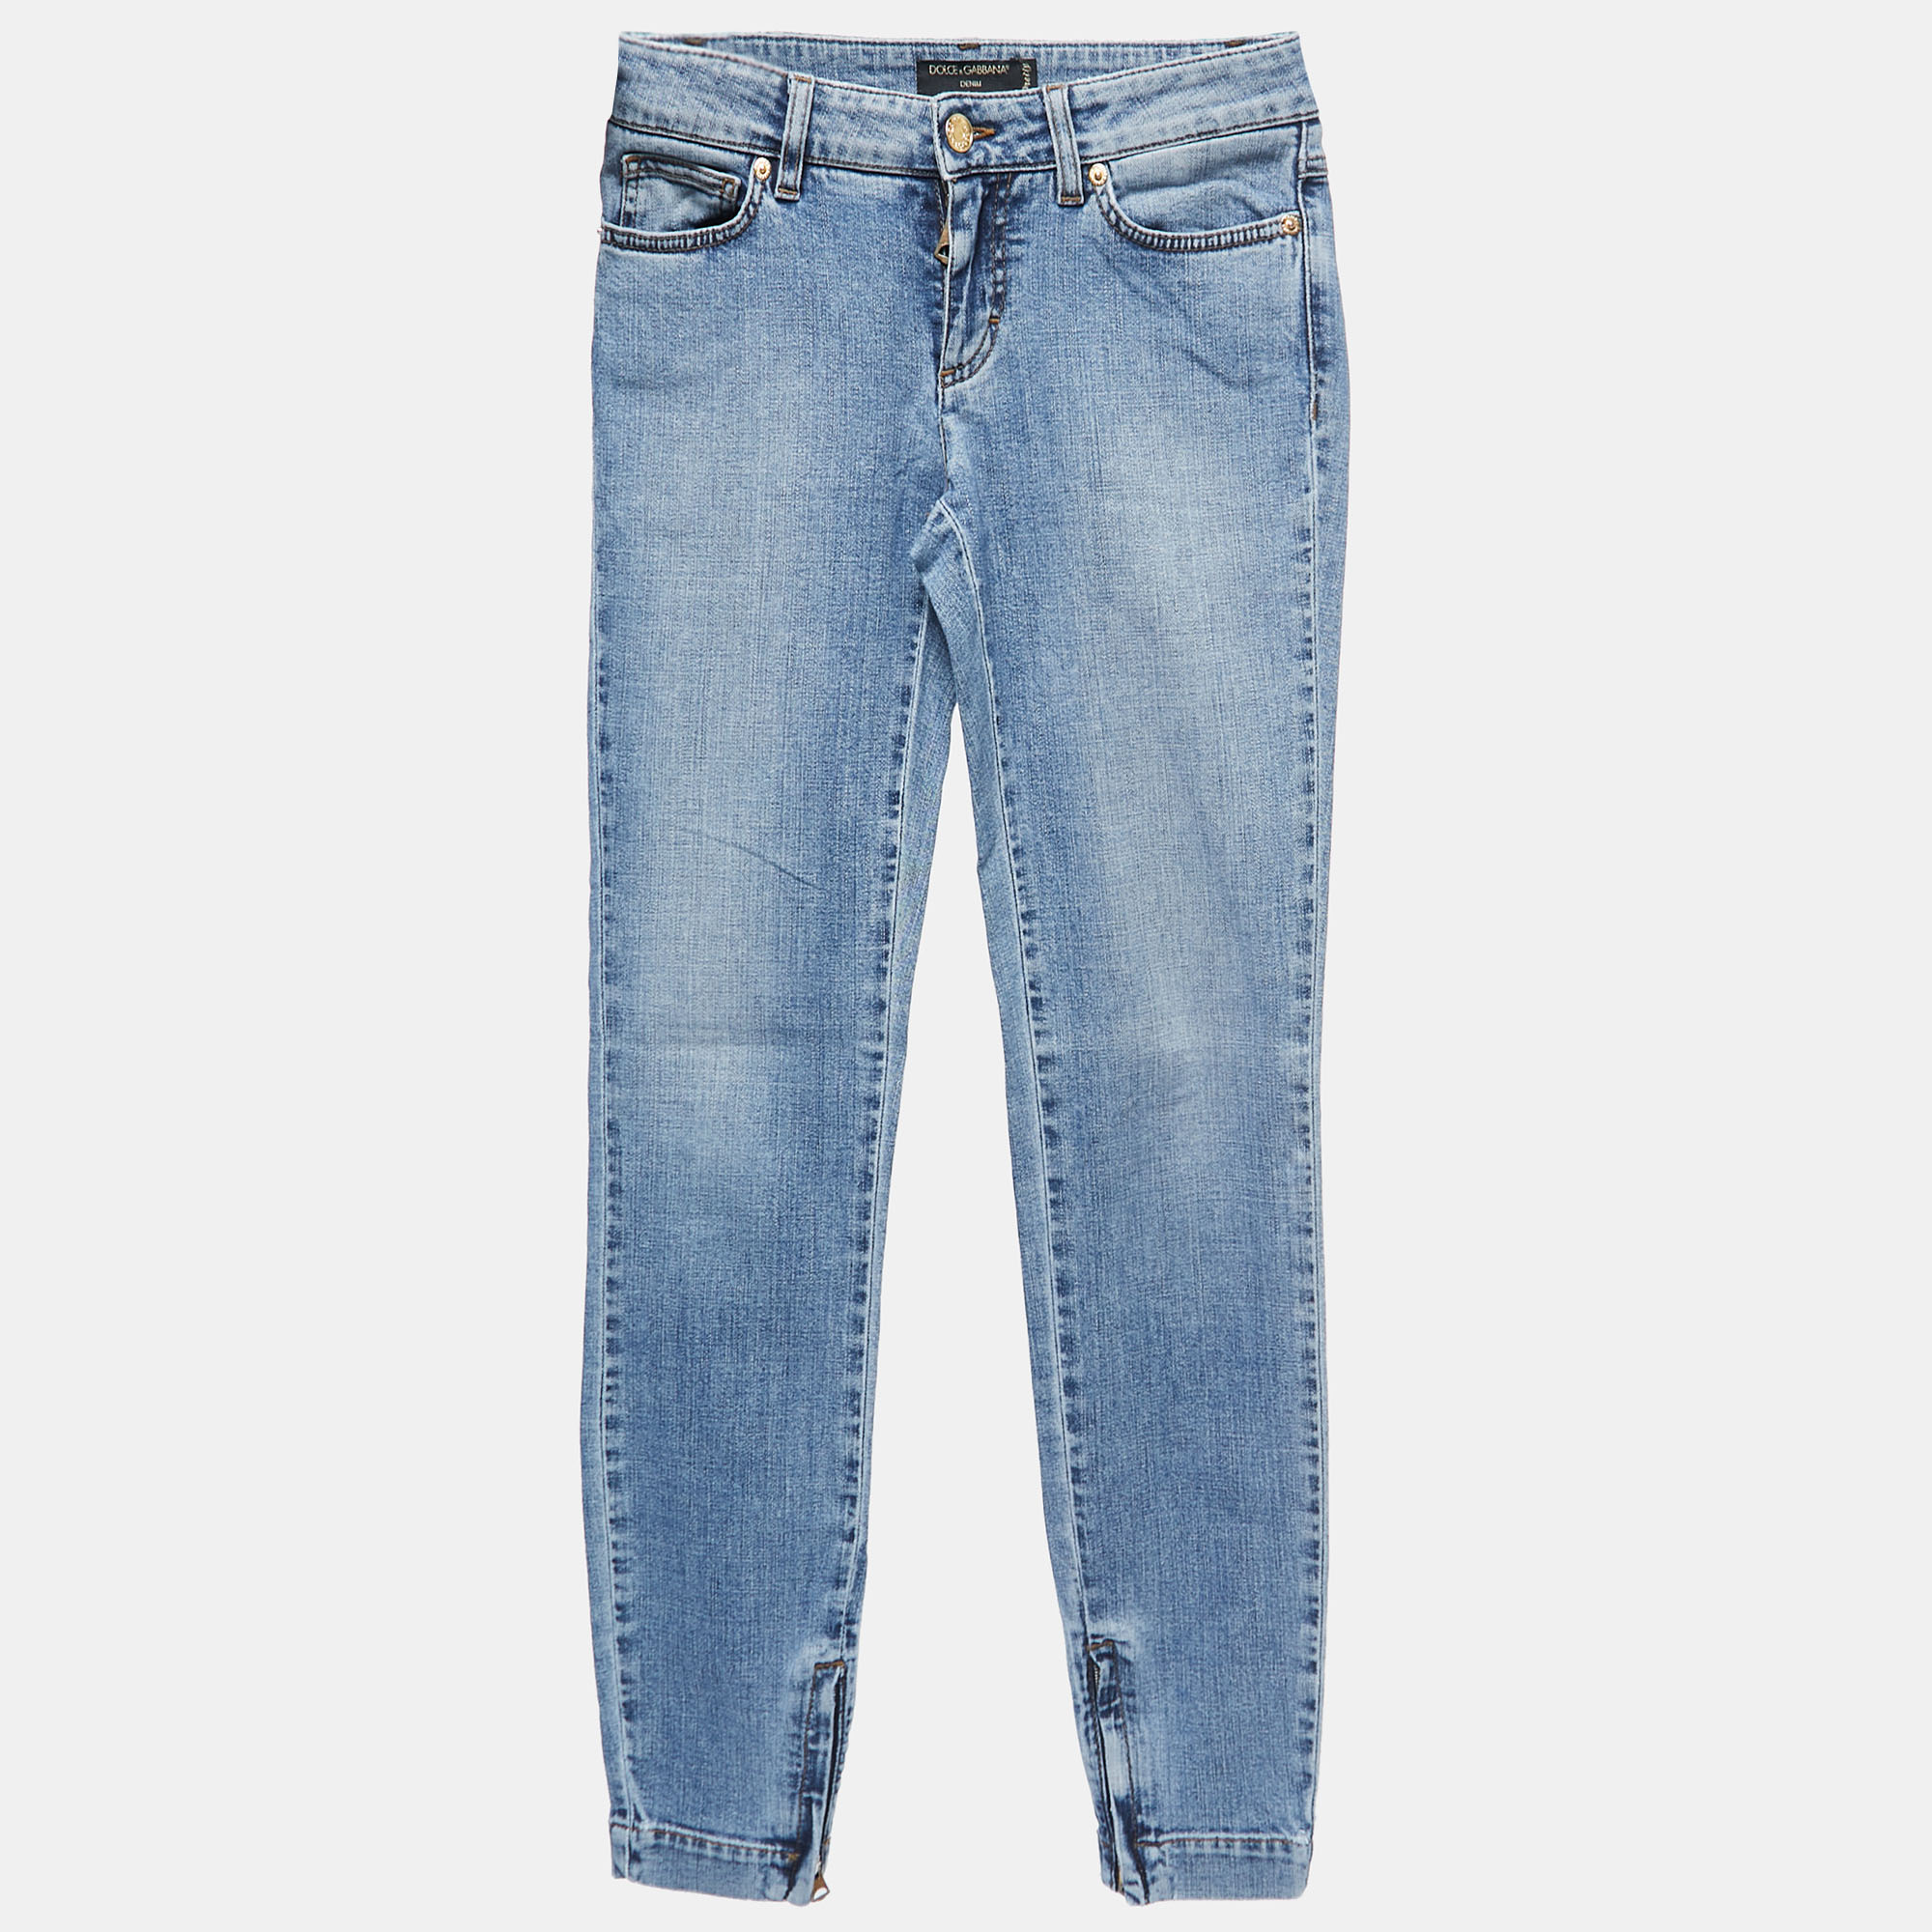 Dolce & Gabbana Blue Washed Denim Skinny Jeans S Waist 27